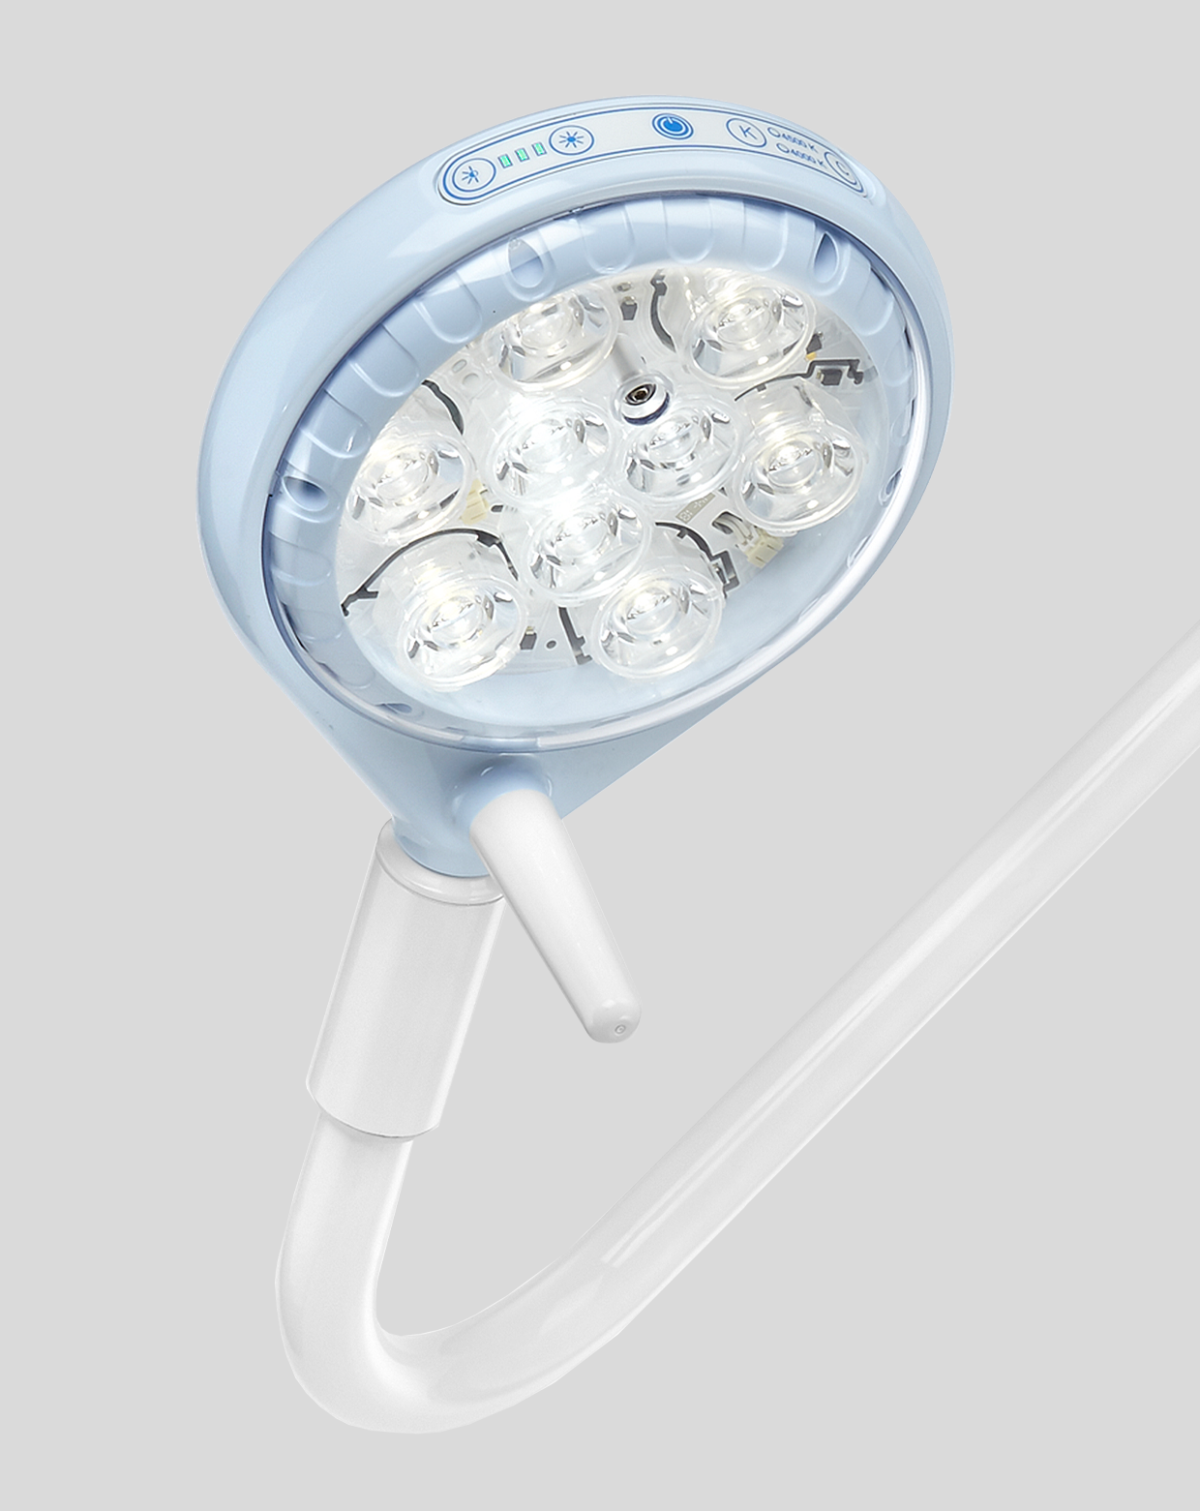 La lampada operatoria Saturno-led, che non genera ombre, è adatta per piccoli interventi chirurgici di superficie, ginecologia e primo soccorso. 